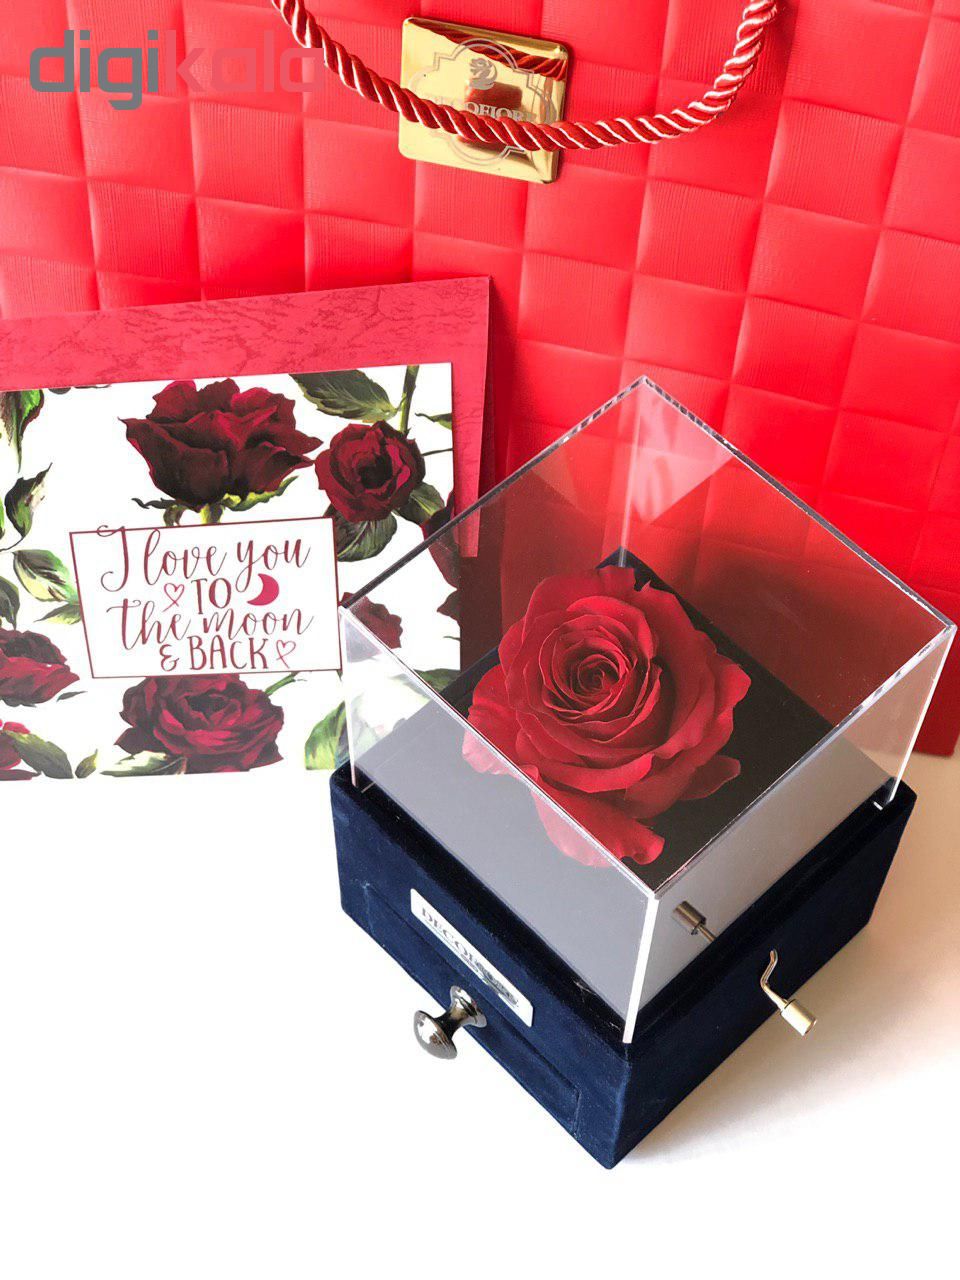 جعبه موزیکال کشودار رز جاودان دکوفیوره ملودی عاشقانه  - به همراه کارت عاشقانه و پاکت مخصوص دکوفیوره